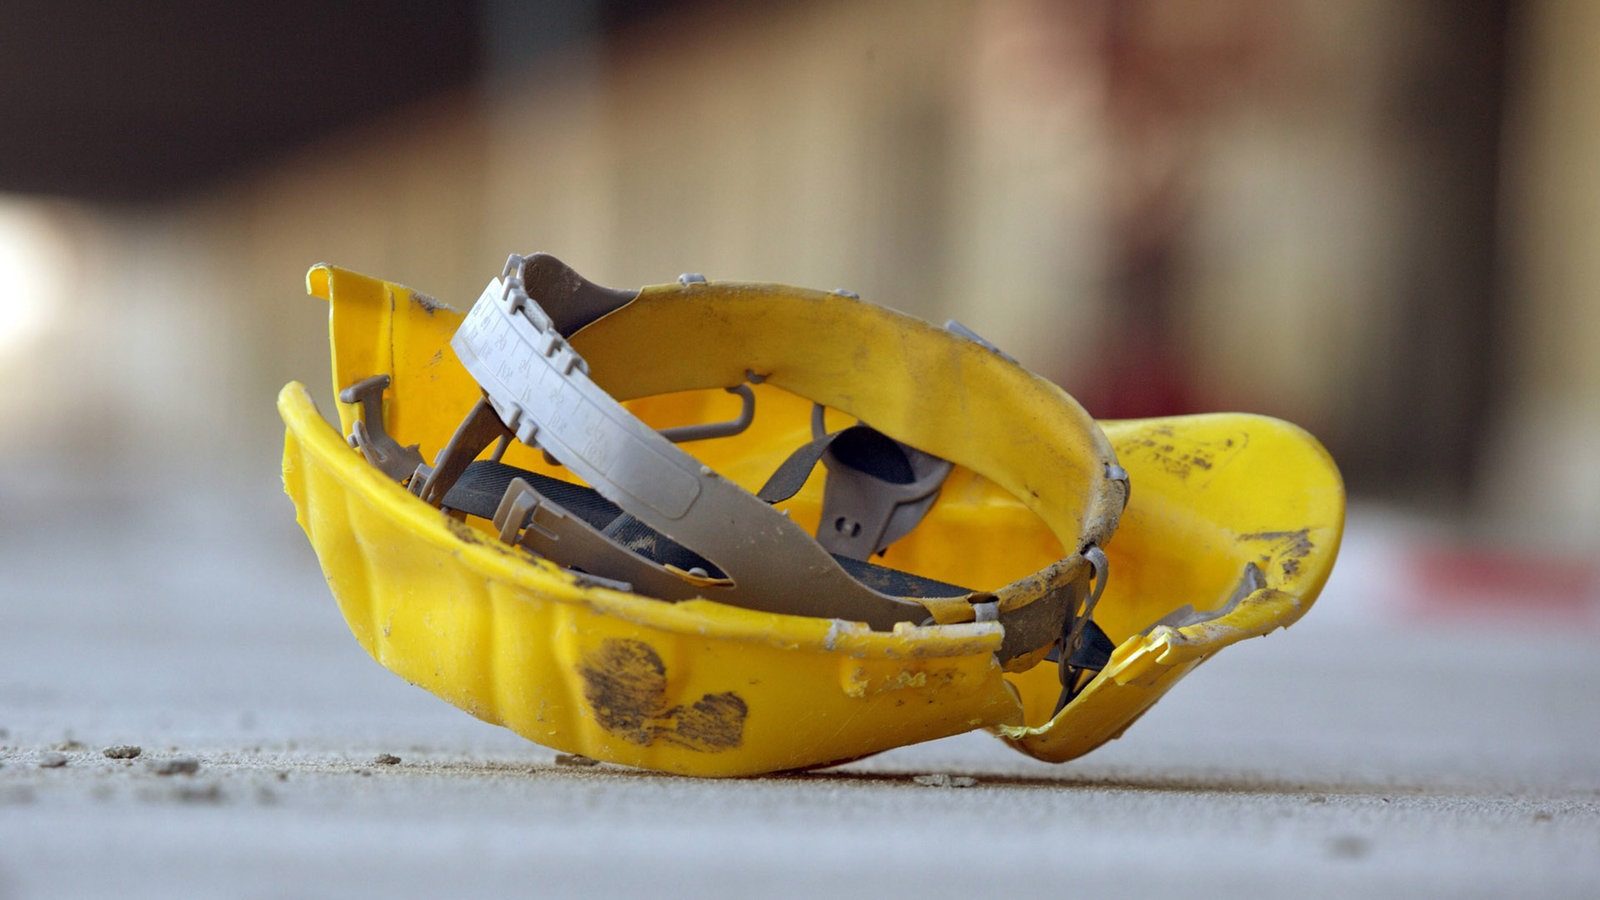 Un operaio di 58 anni è morto a Ceprano, colpito in testa da una trave di metallo mentre era al lavoro